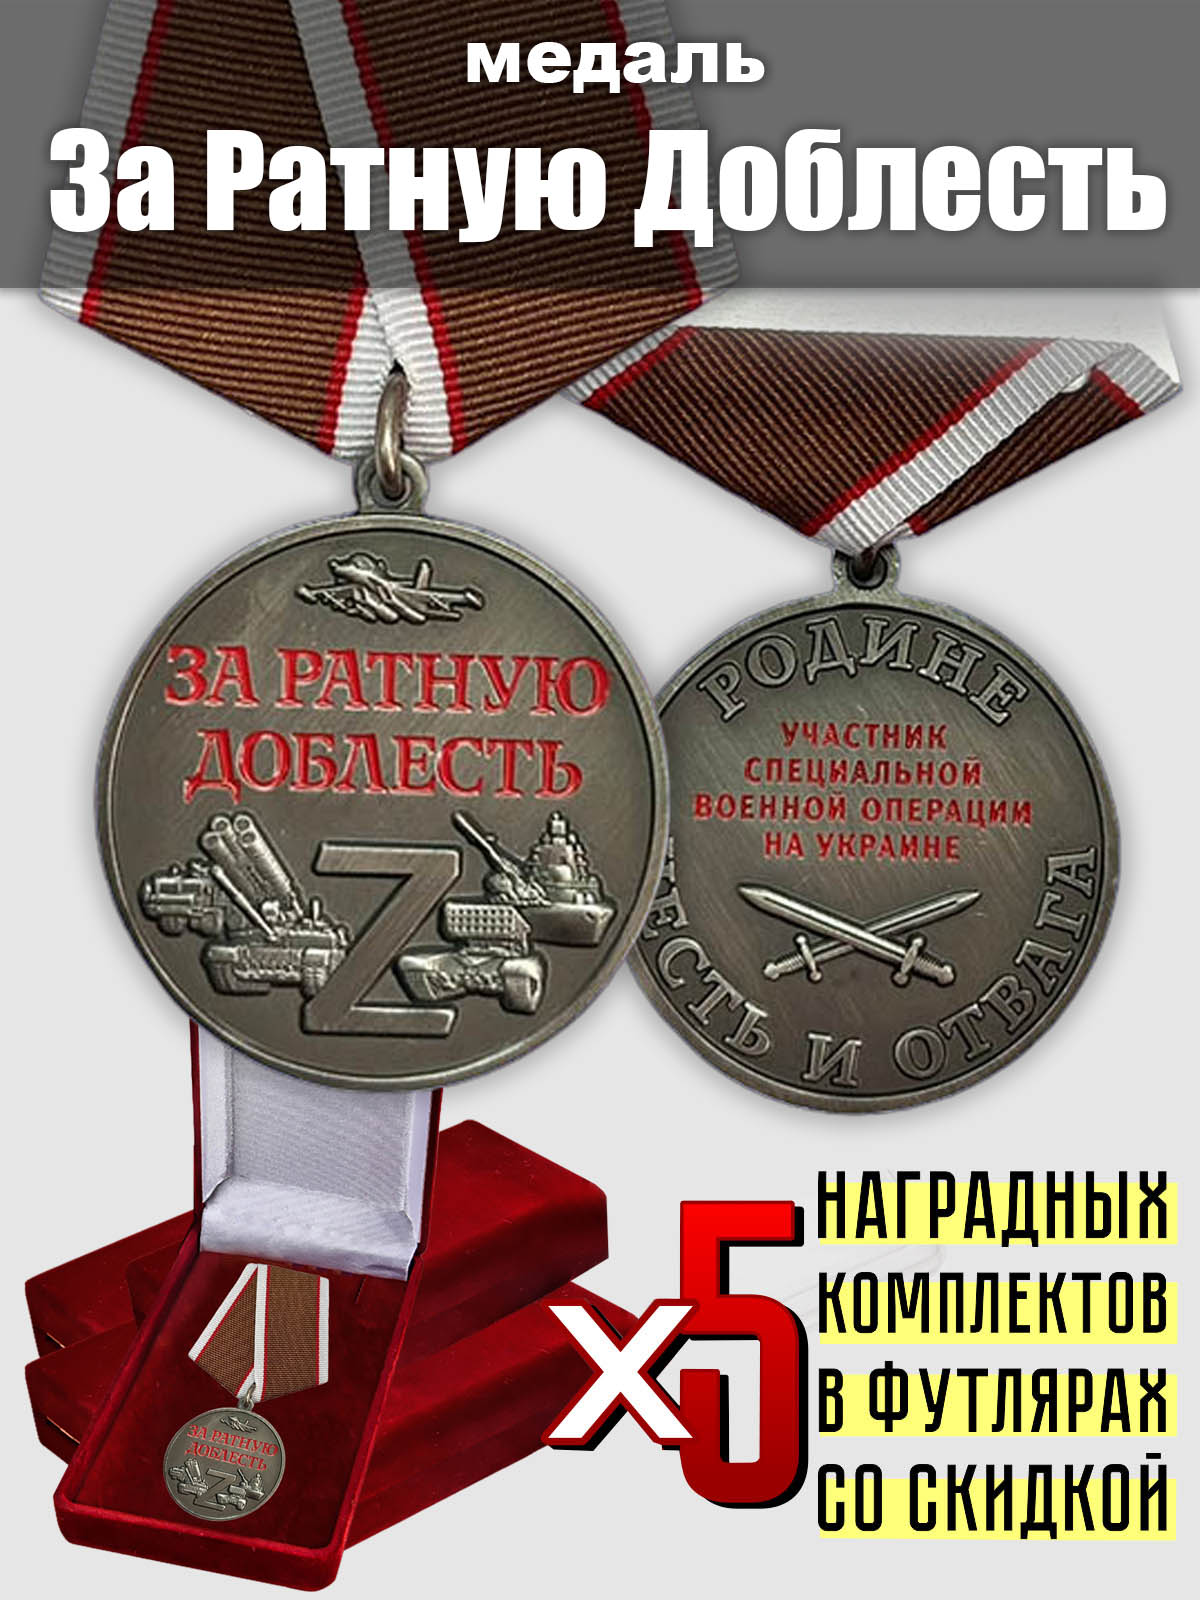 Набор медалей "За ратную доблесть" участникам СВО (5 шт.)